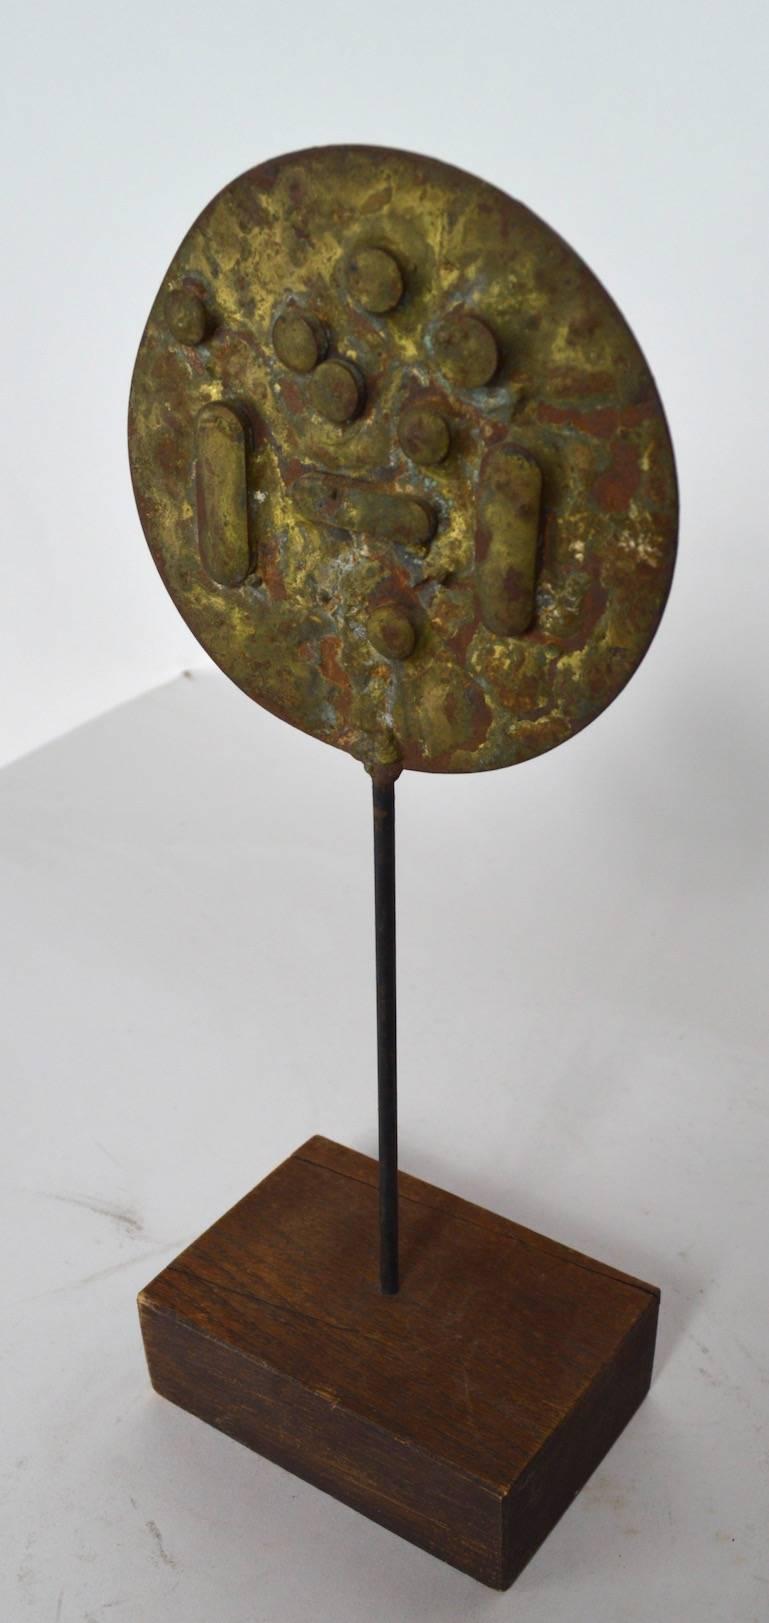 Brutalistische Skulptur aus Bronze, Messing und Holz im Kabinettmaßstab des bekannten Bildhauers Dimitri Hadzi. Interessantes abstraktes Exemplar aus gemischtem Metall, signiert auf dem Sockel, wie abgebildet.
          